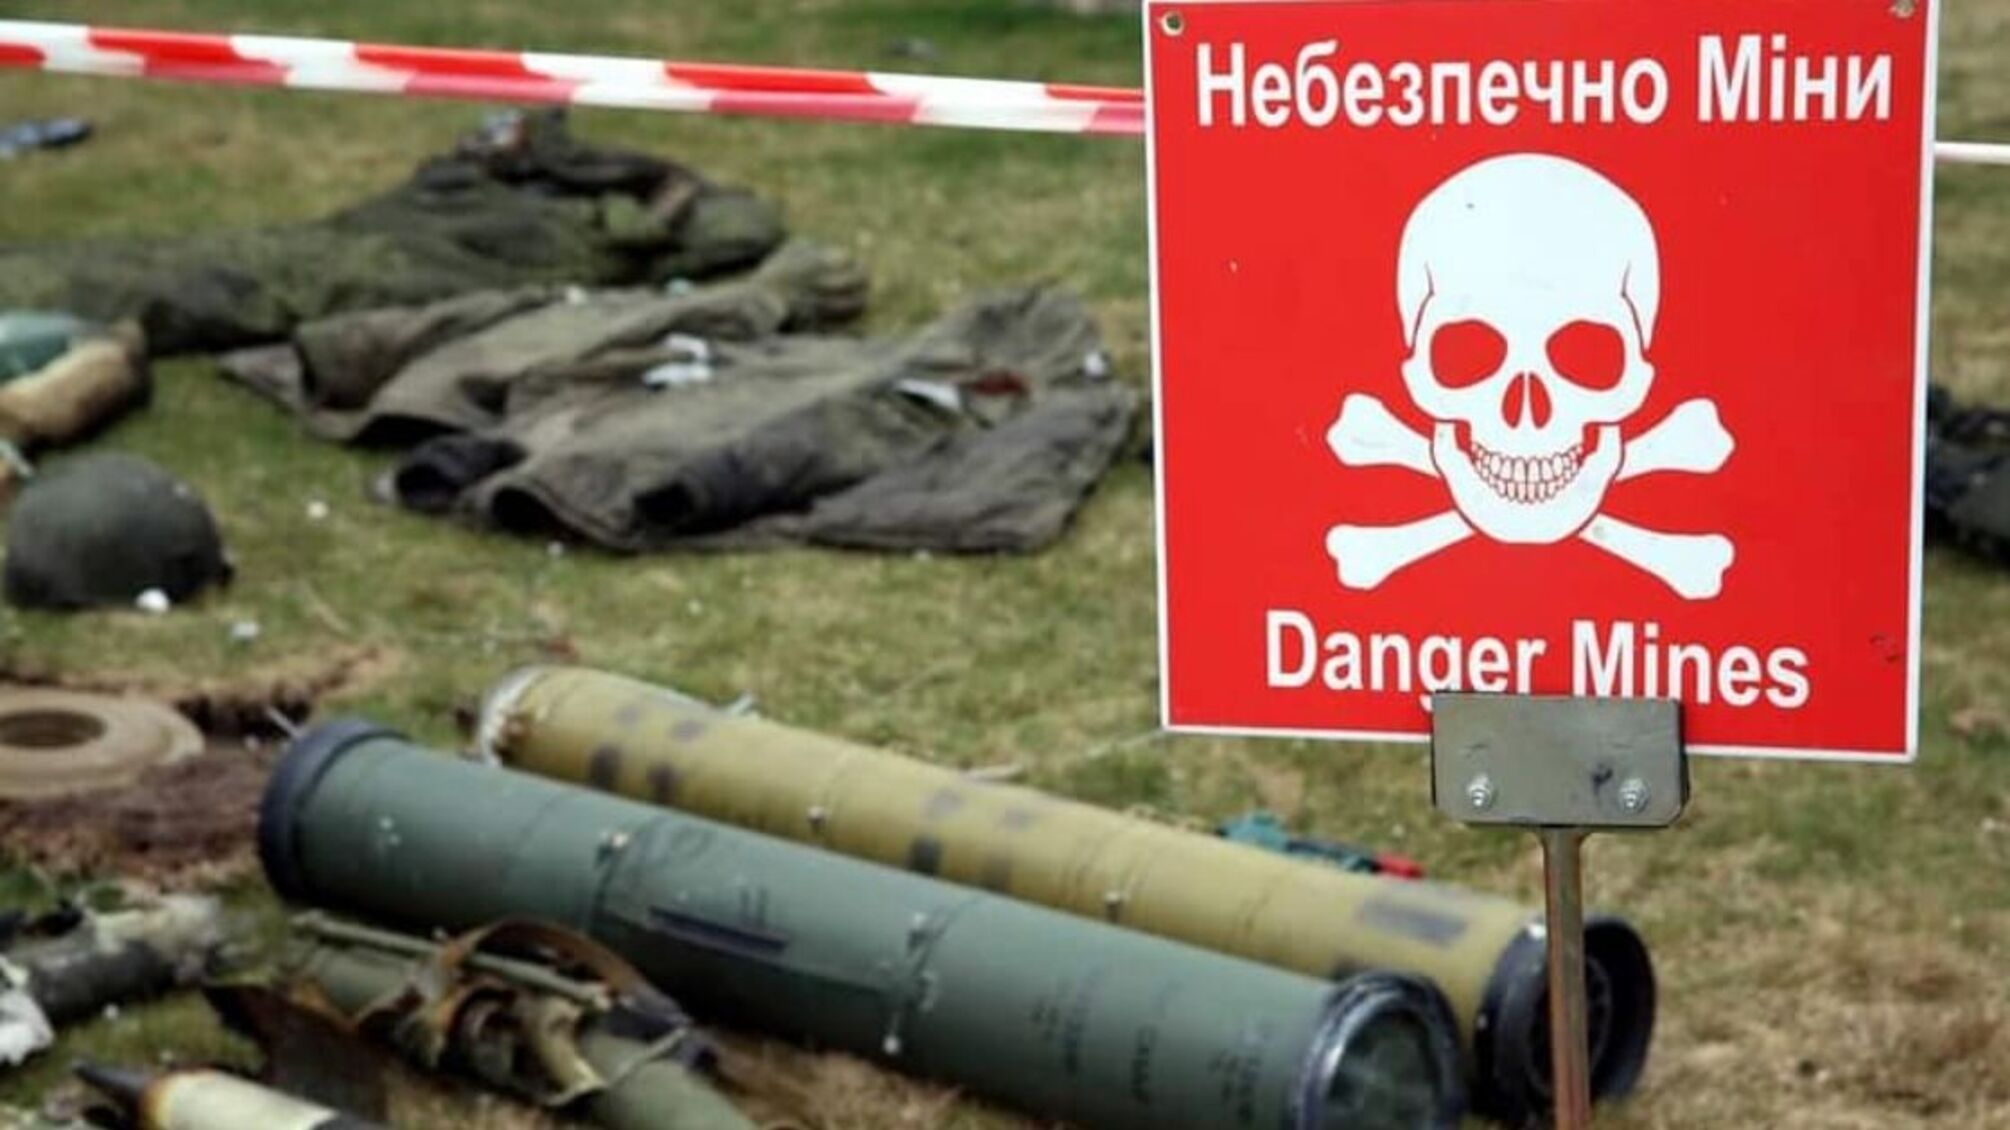 'Опасно – мины!': Какой праздник 4 апреля празднует целый мир